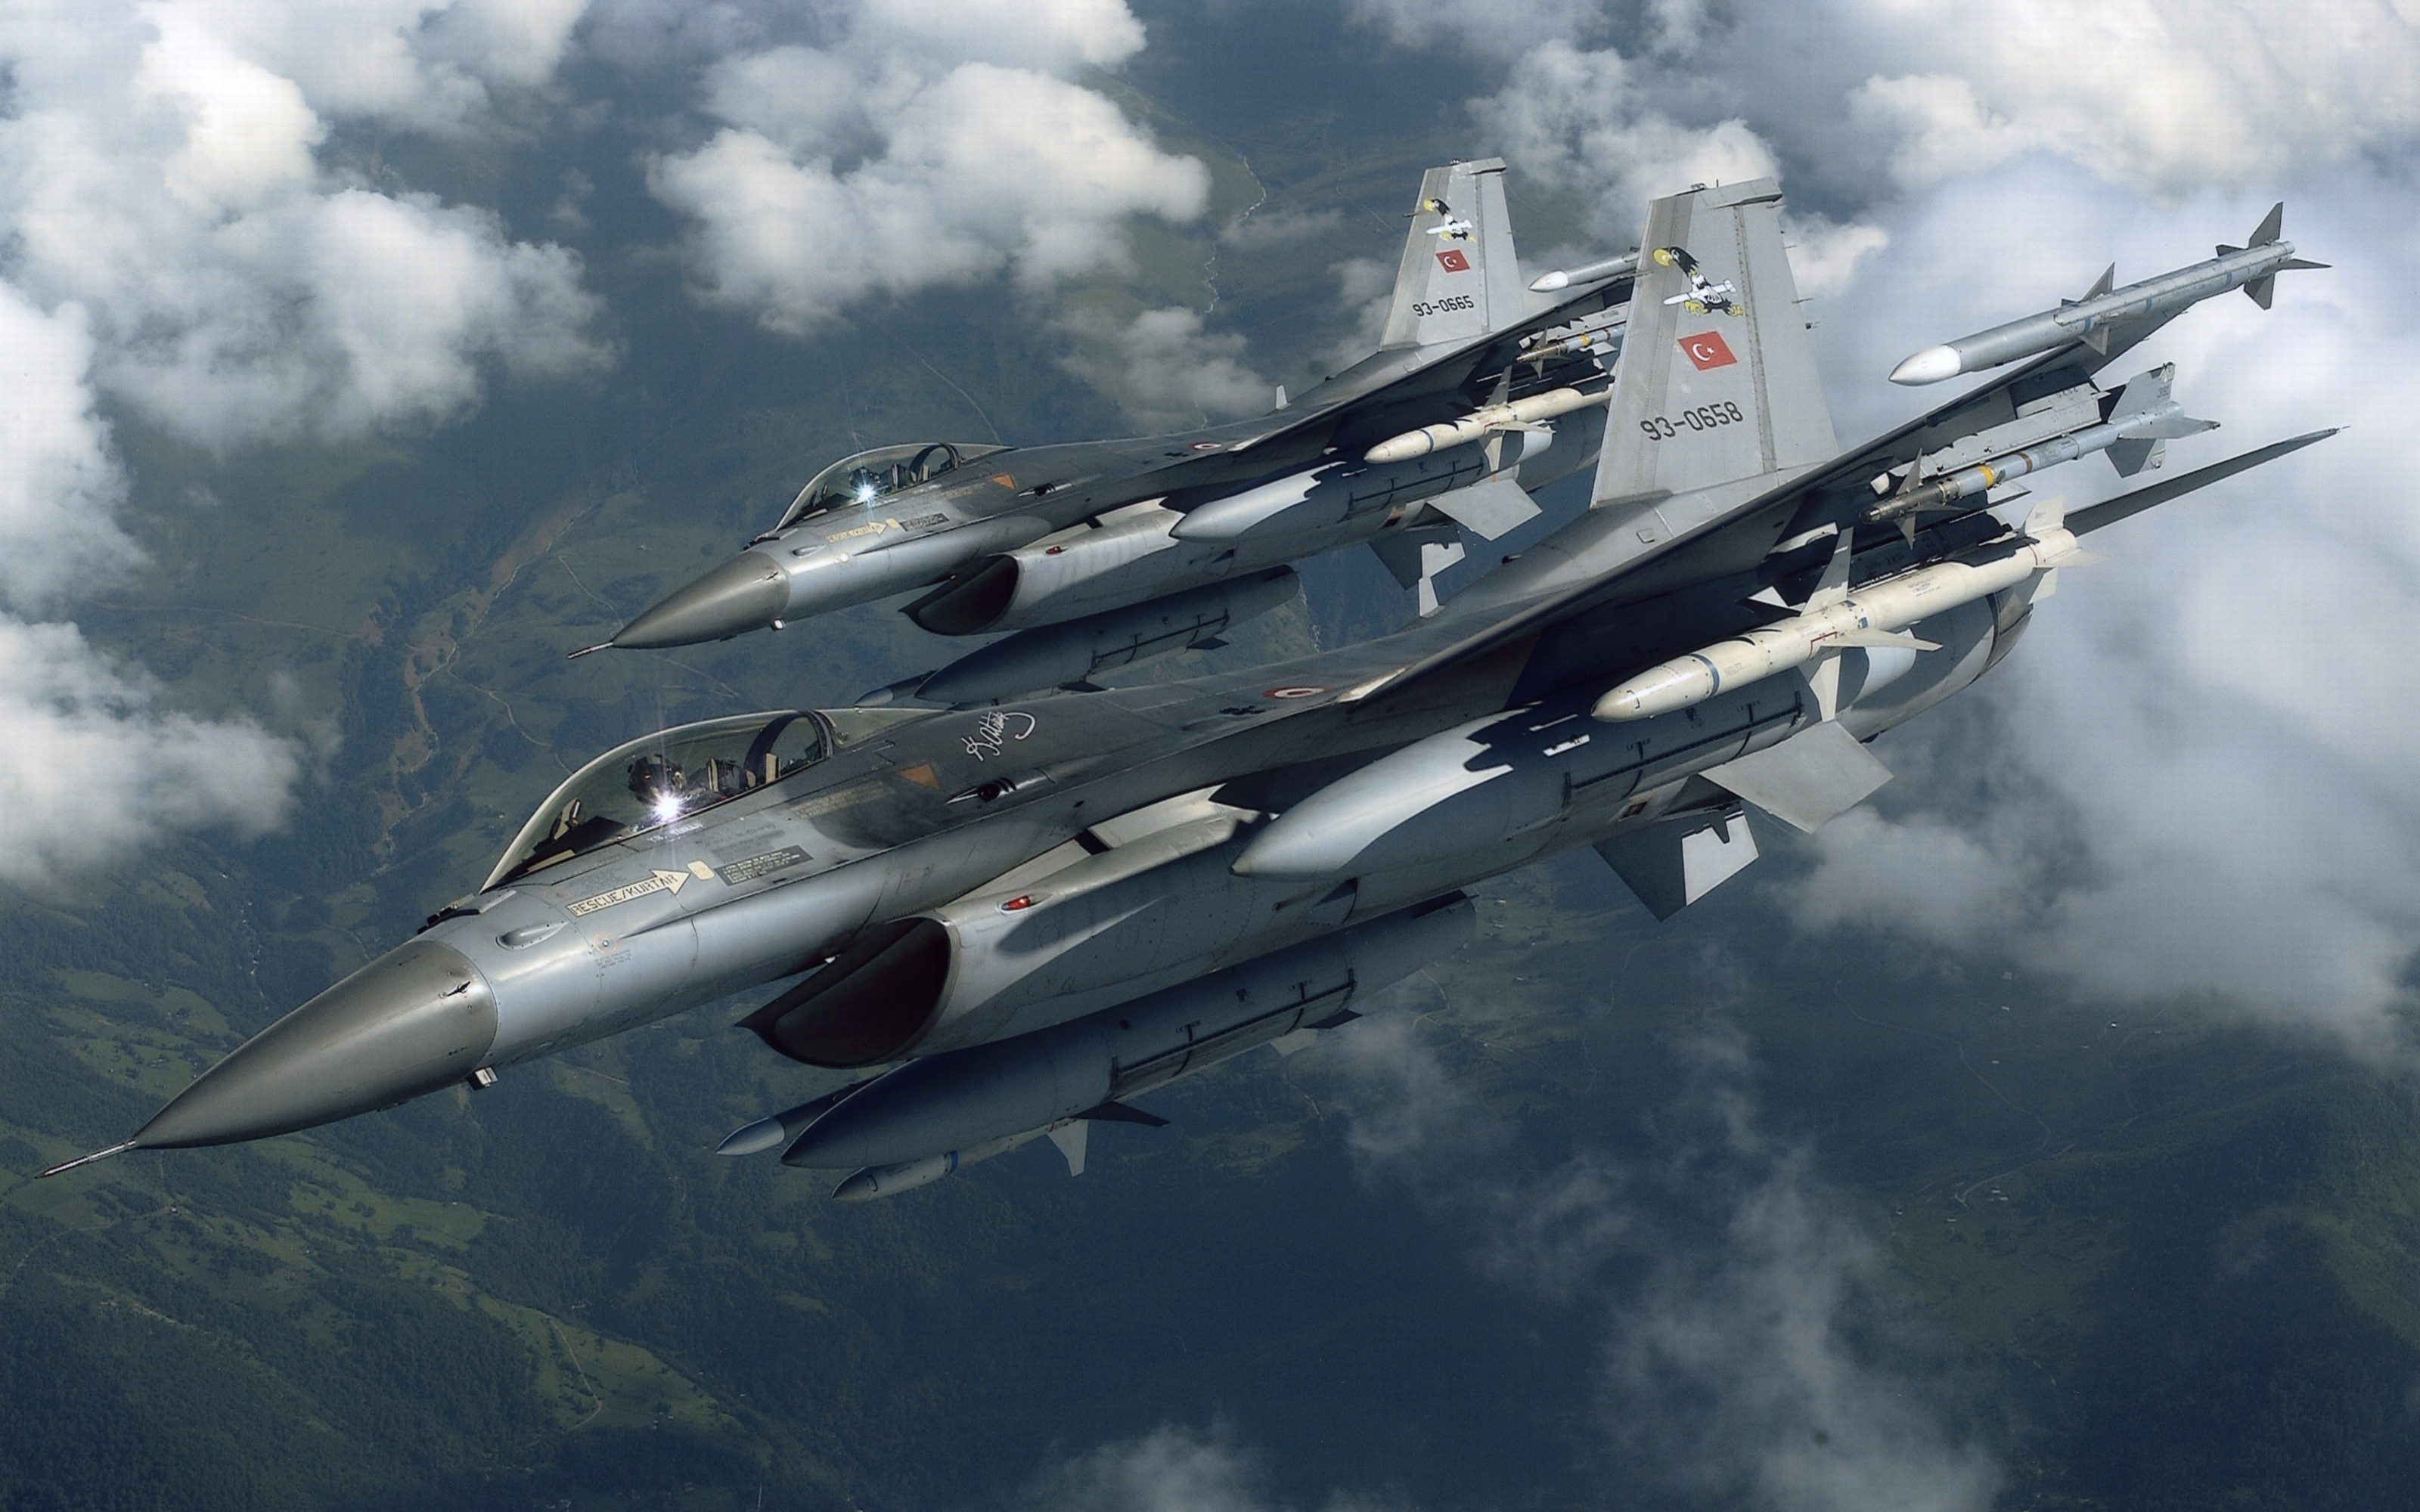 облака, самолет, военный, Турция, транспортные средства, F- 16 Fighting Falcon, Top Gun, небо - обои на рабочий стол